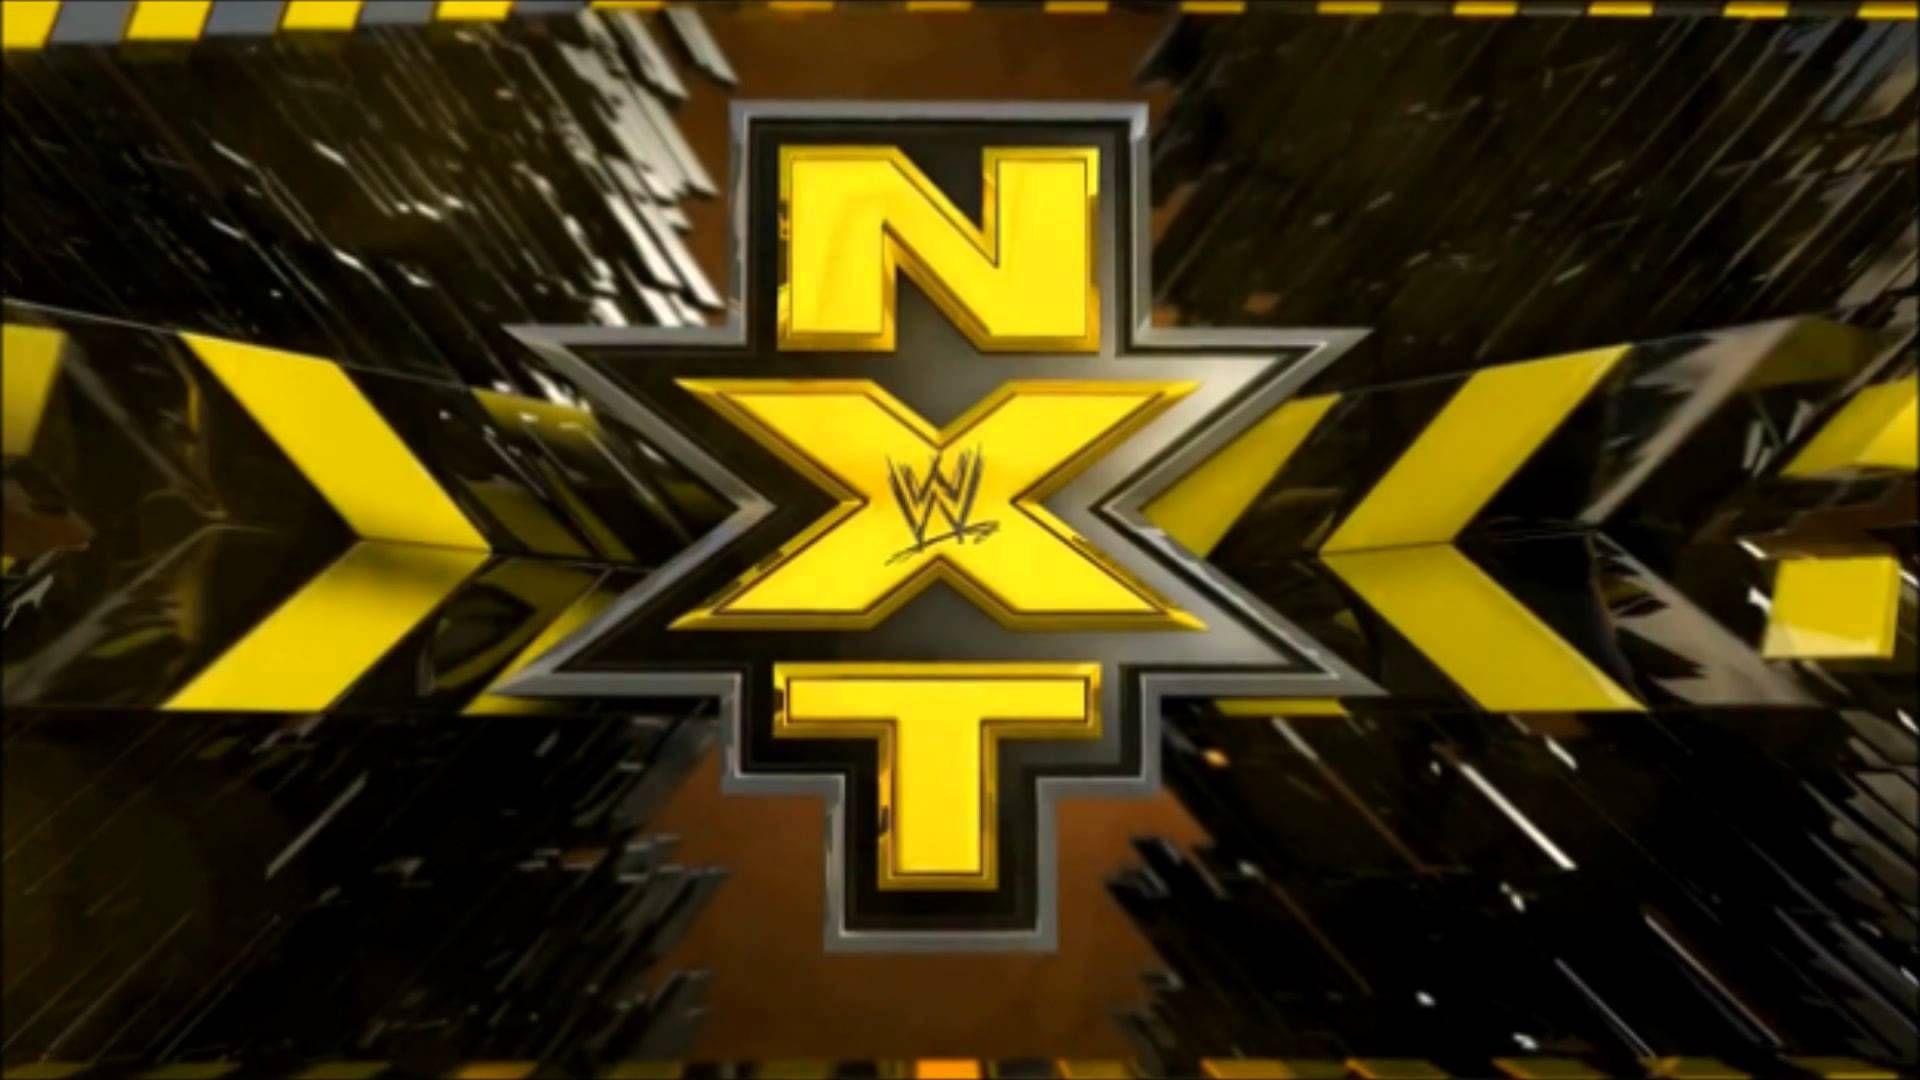 WWE NXT Wallpaper: Find best latest WWE NXT Wallpaper